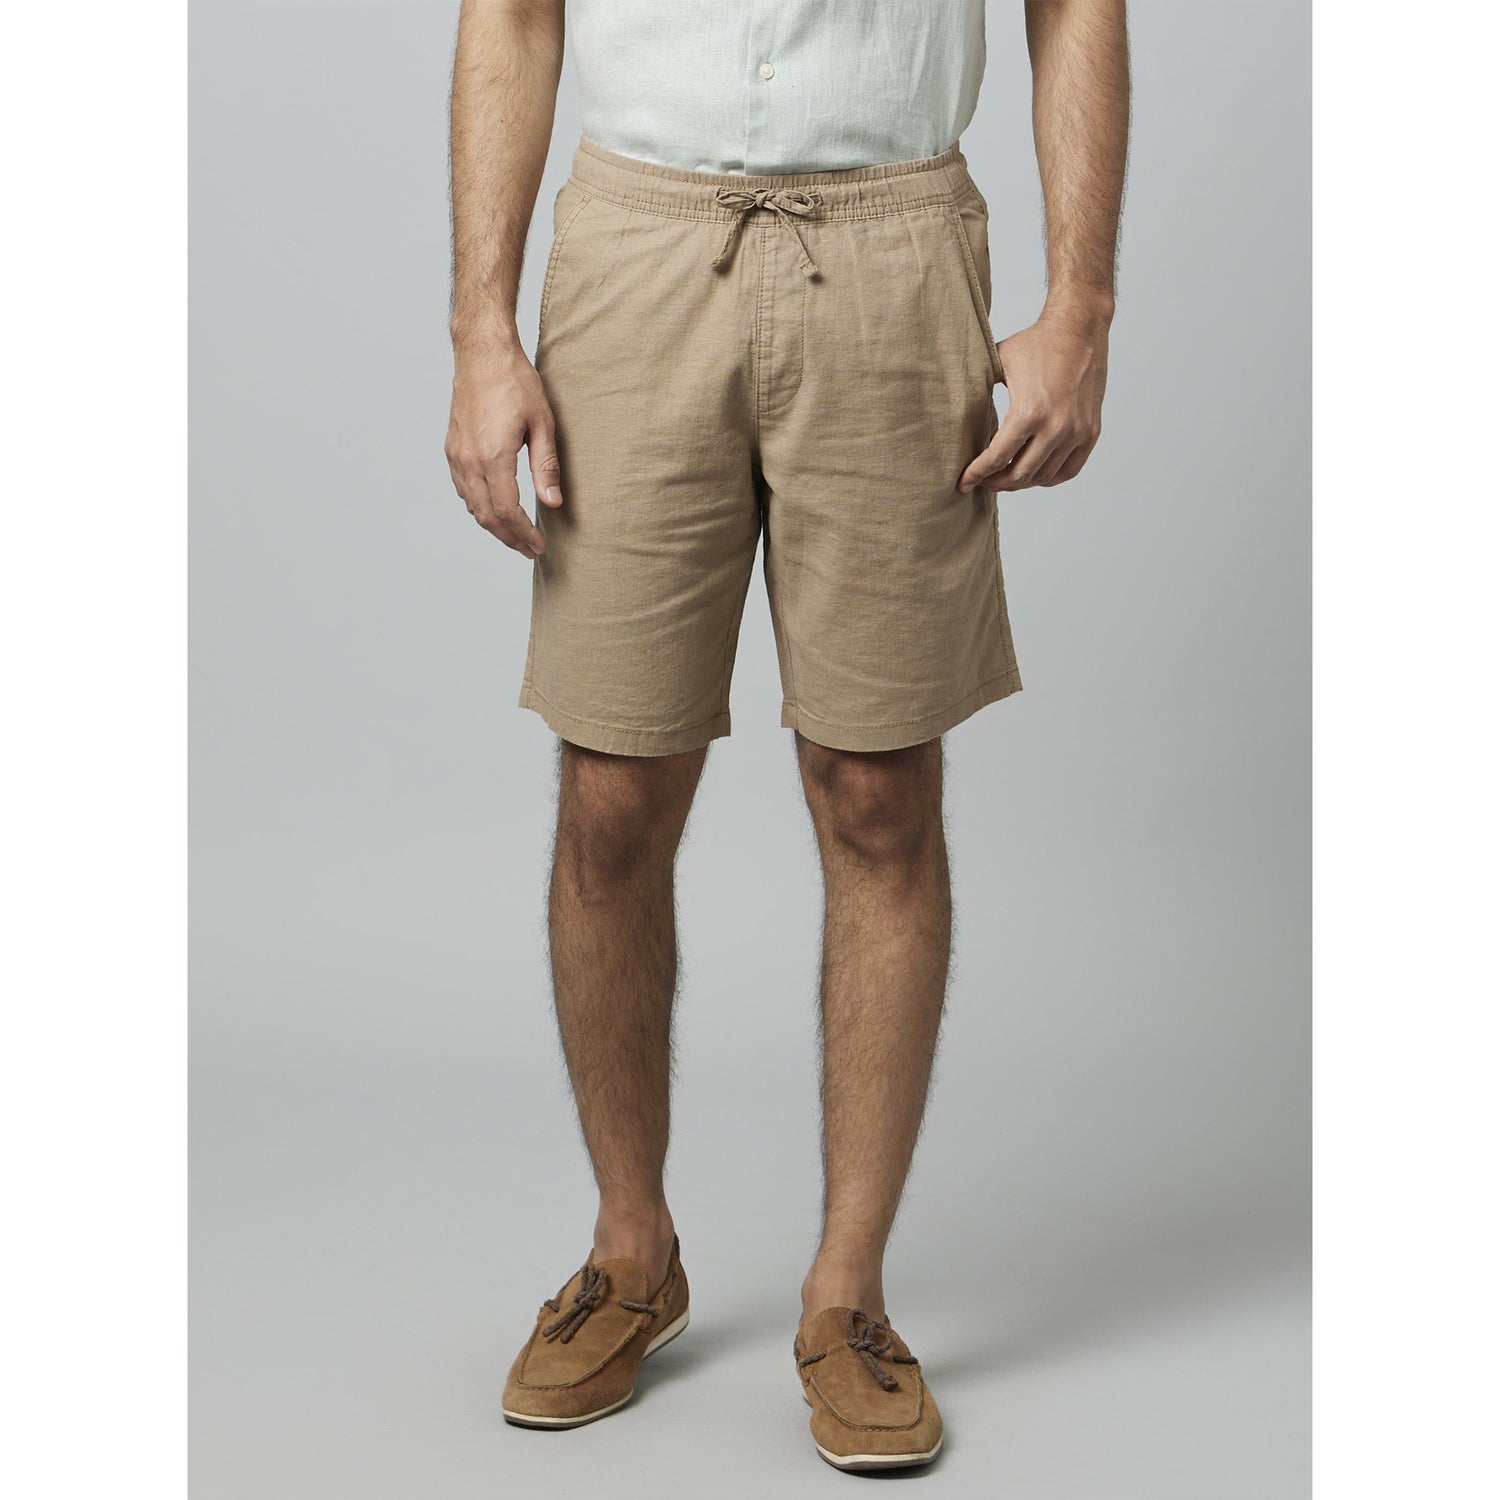 Solid Khaki Cotton Linen Shorts